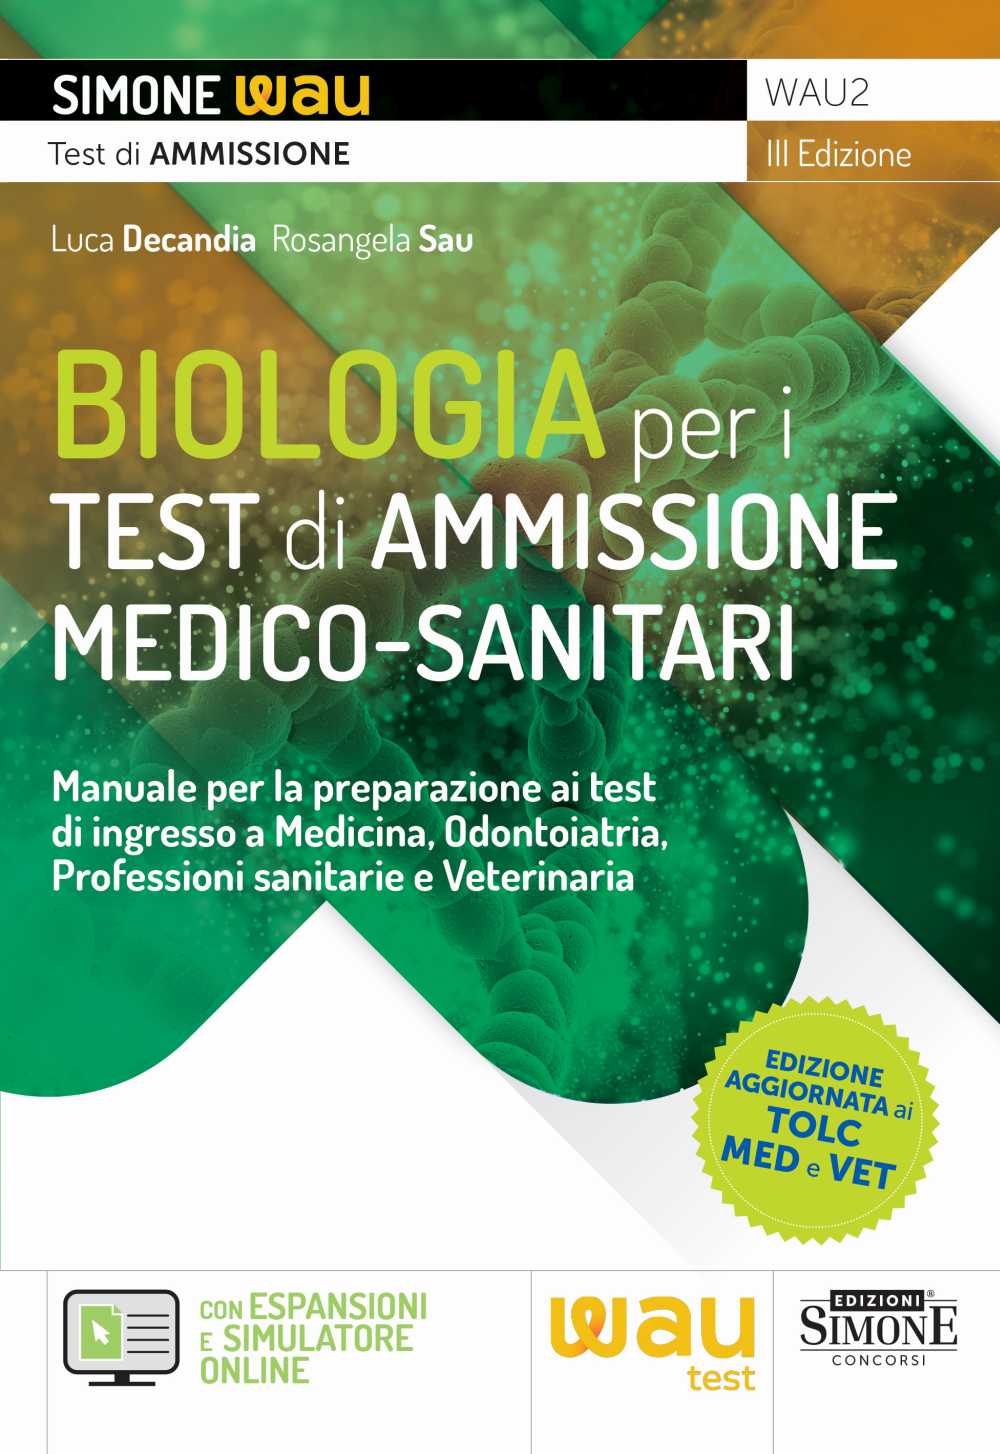 Biologia per i test di Ammissione Medico-Sanitari - WAU2